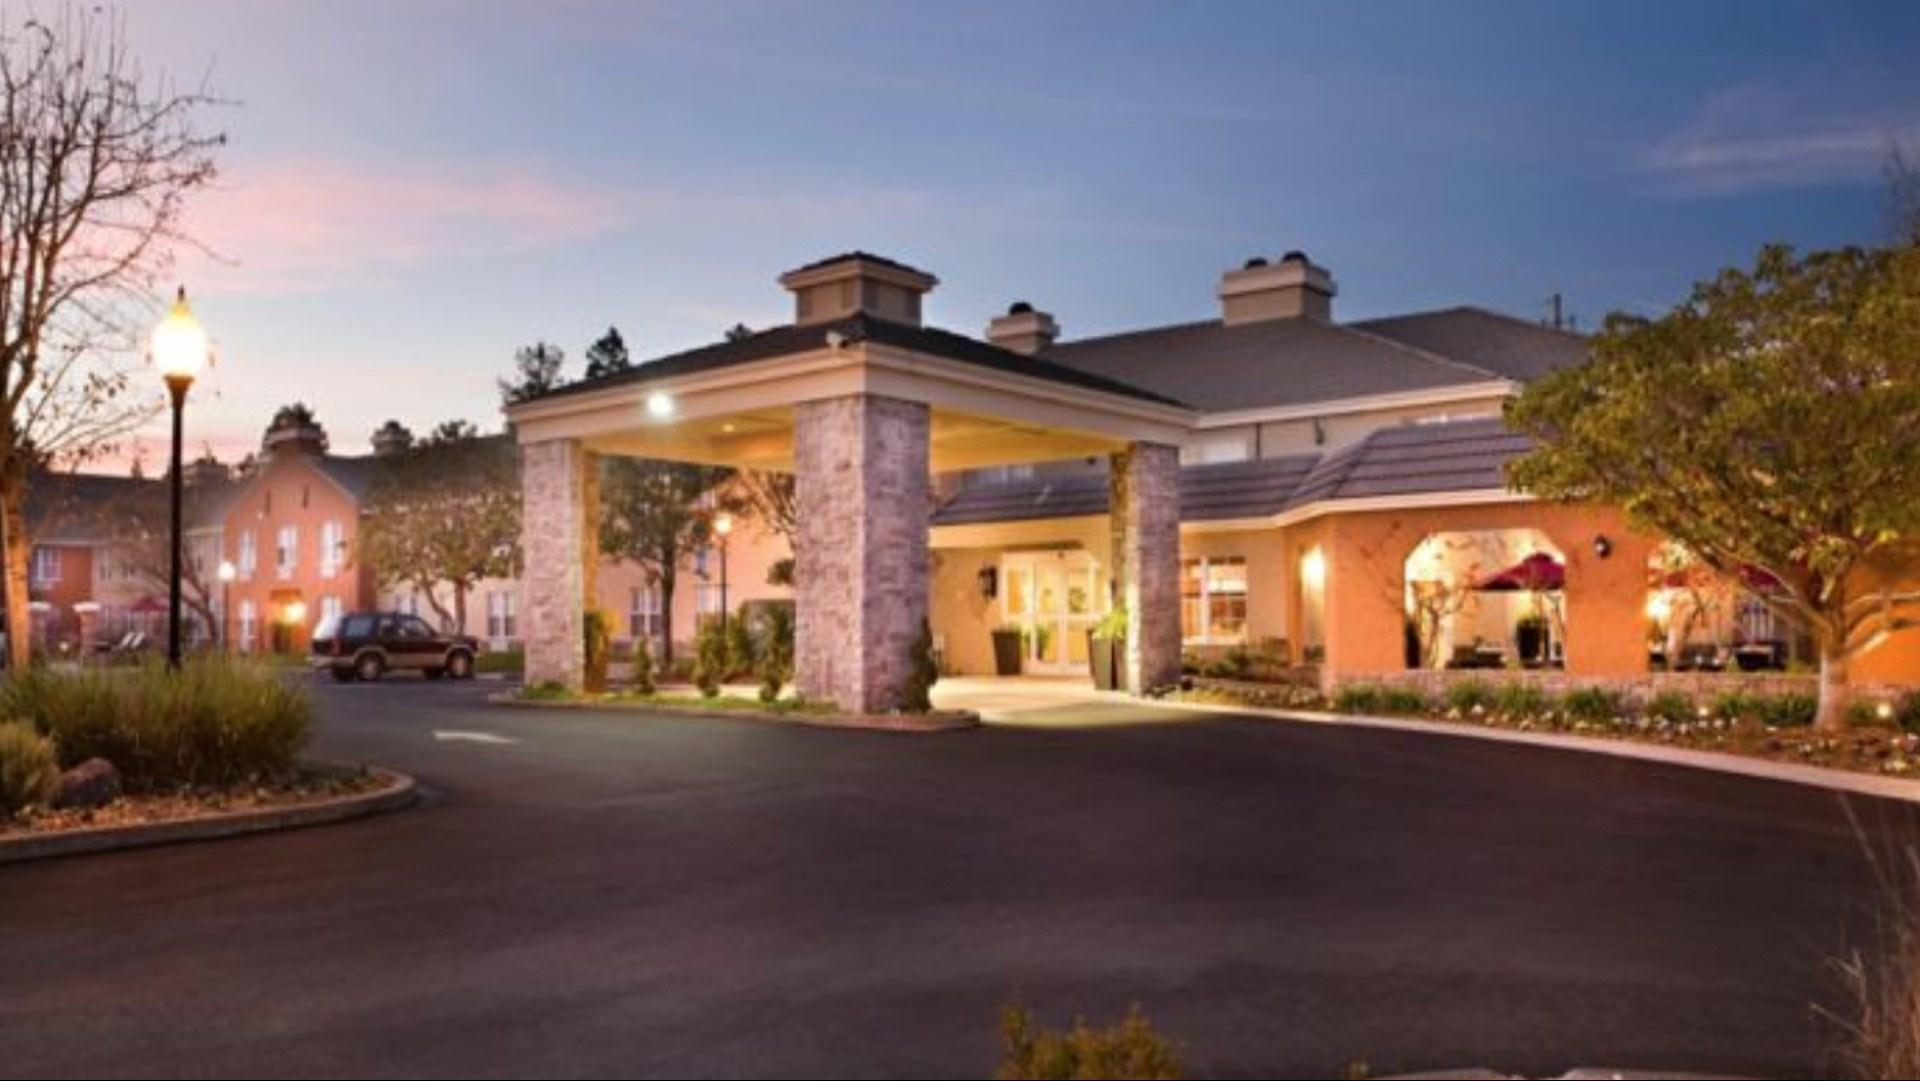 Hotel Indigo Napa Valley in Napa, CA